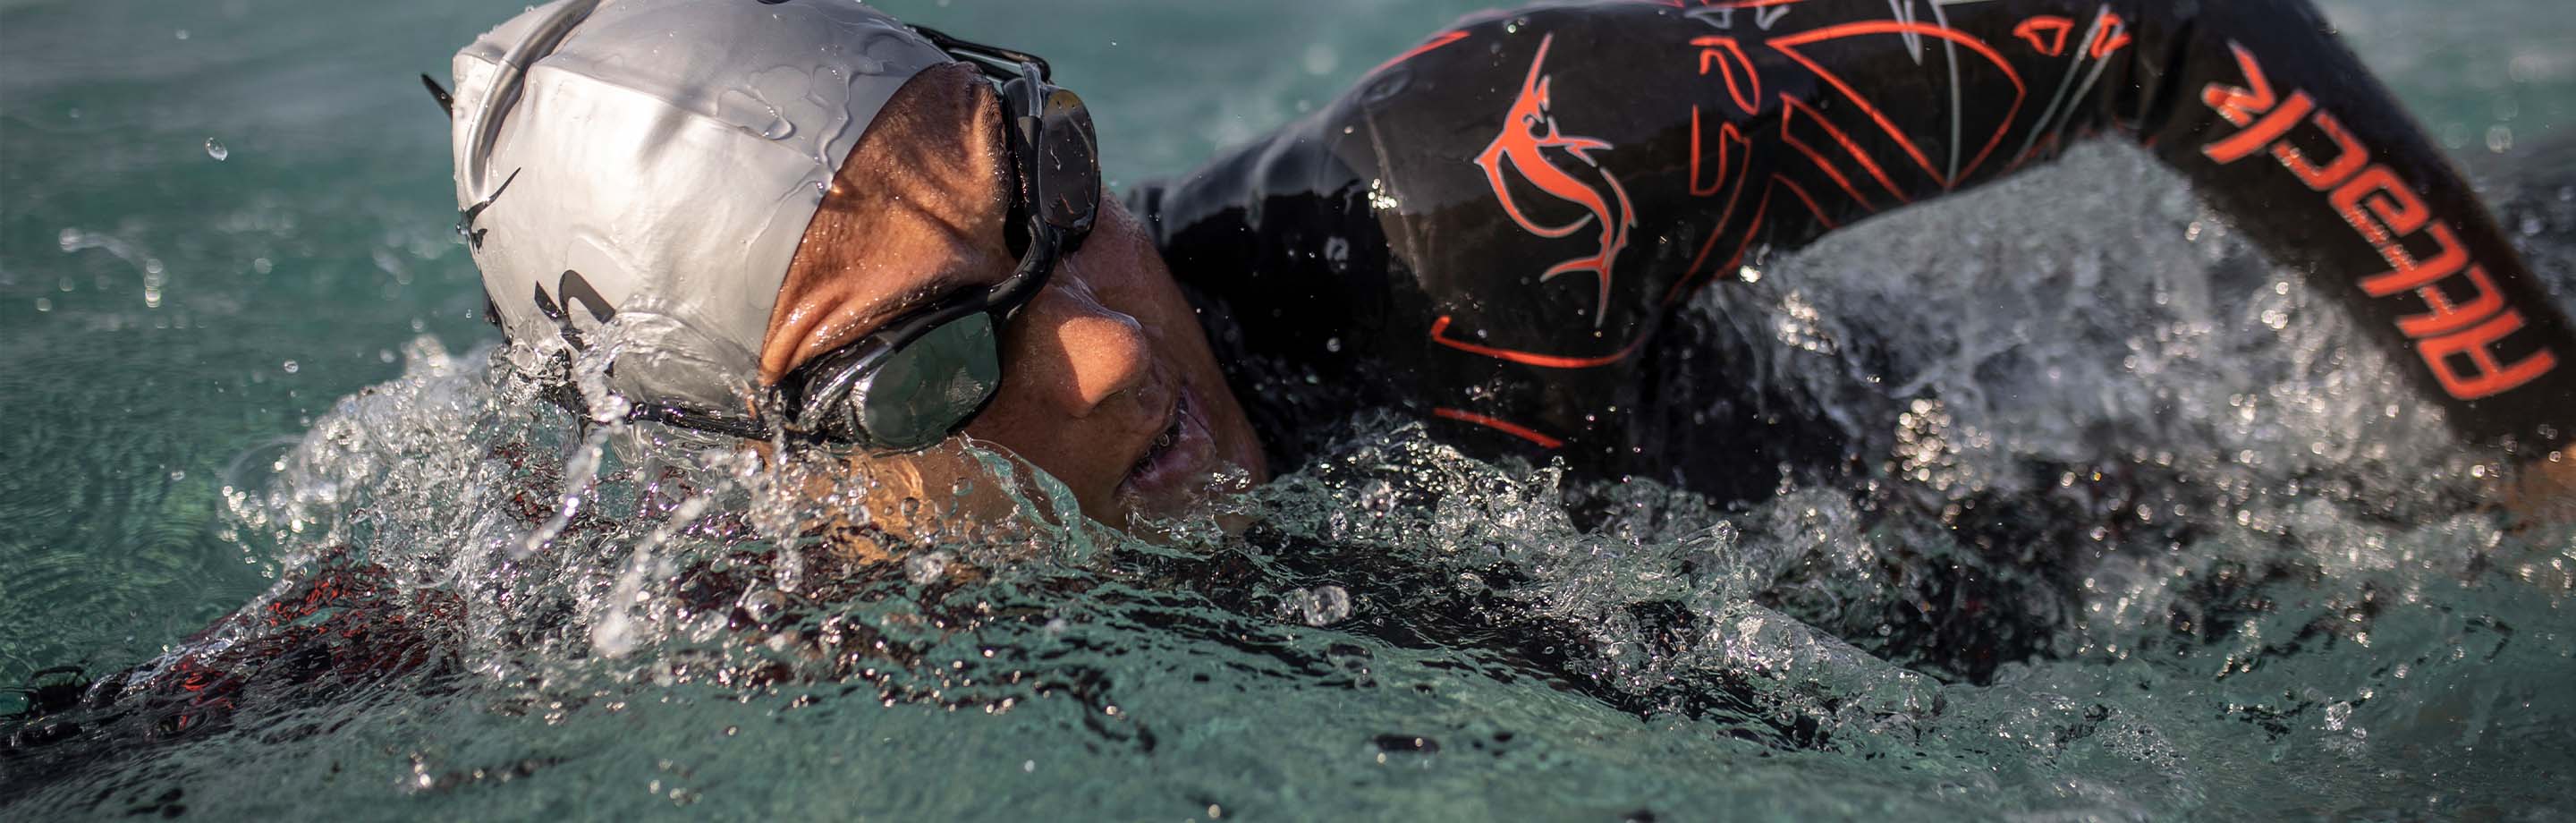 sailfish – Combinaisons de plongée, maillots de bain, trisuits et accessoires – Made to make you faster